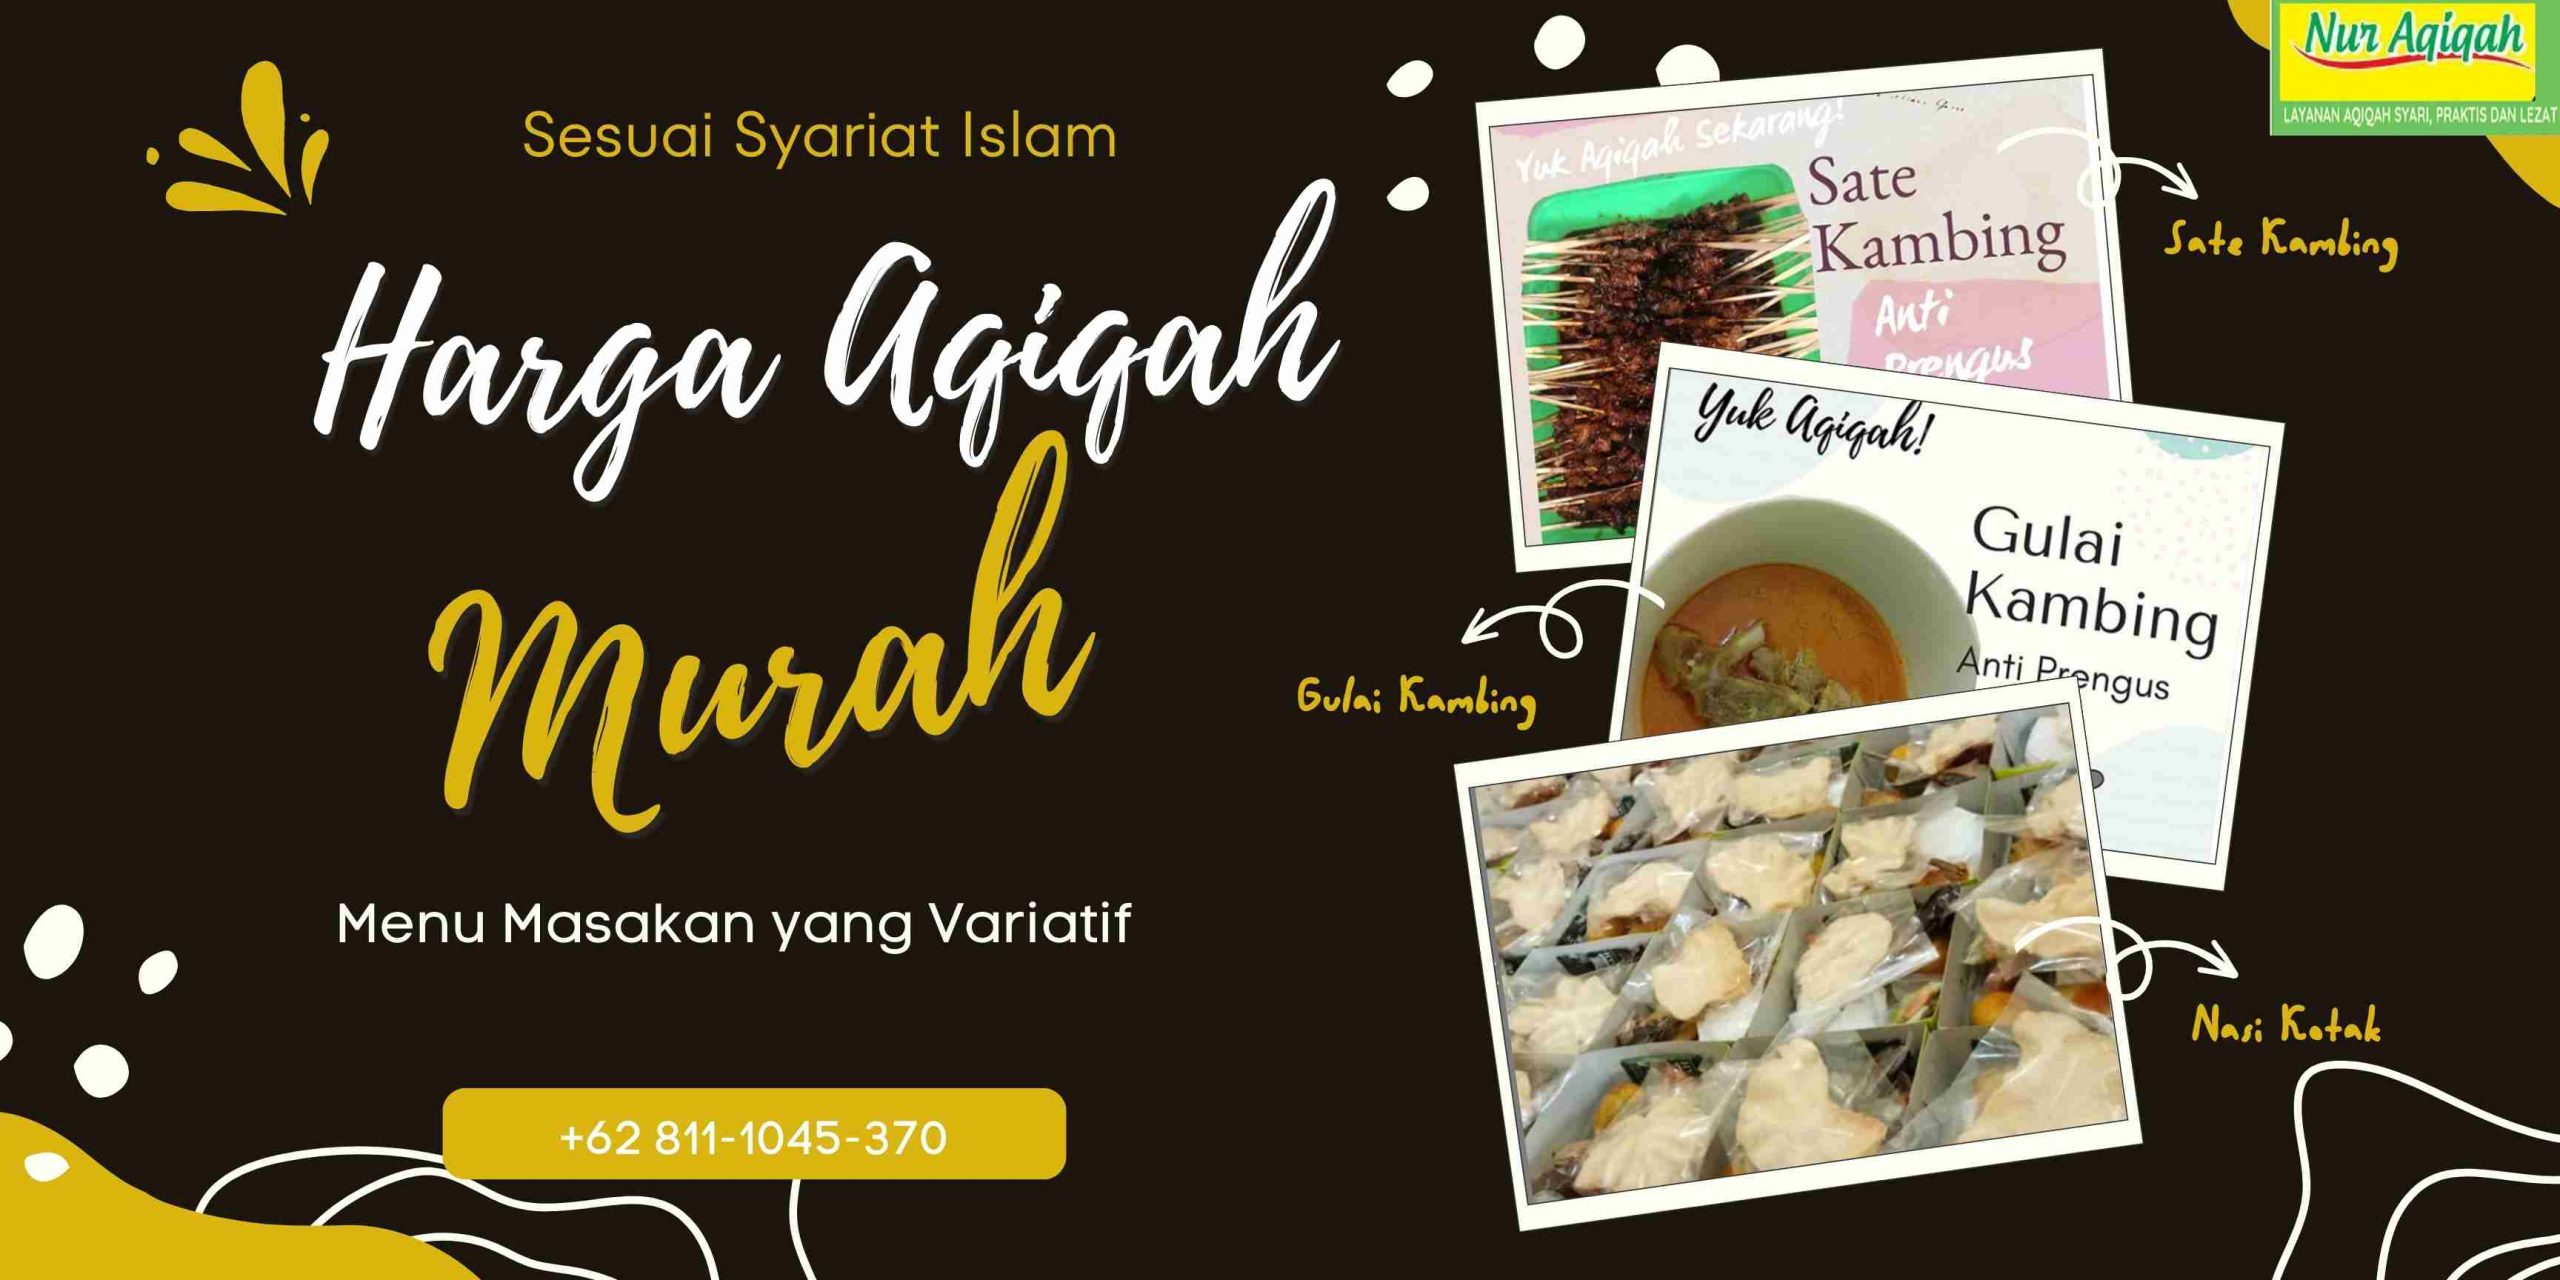 Jasa Aqiqah Selong Kebayoran Baru Jakarta Selatan